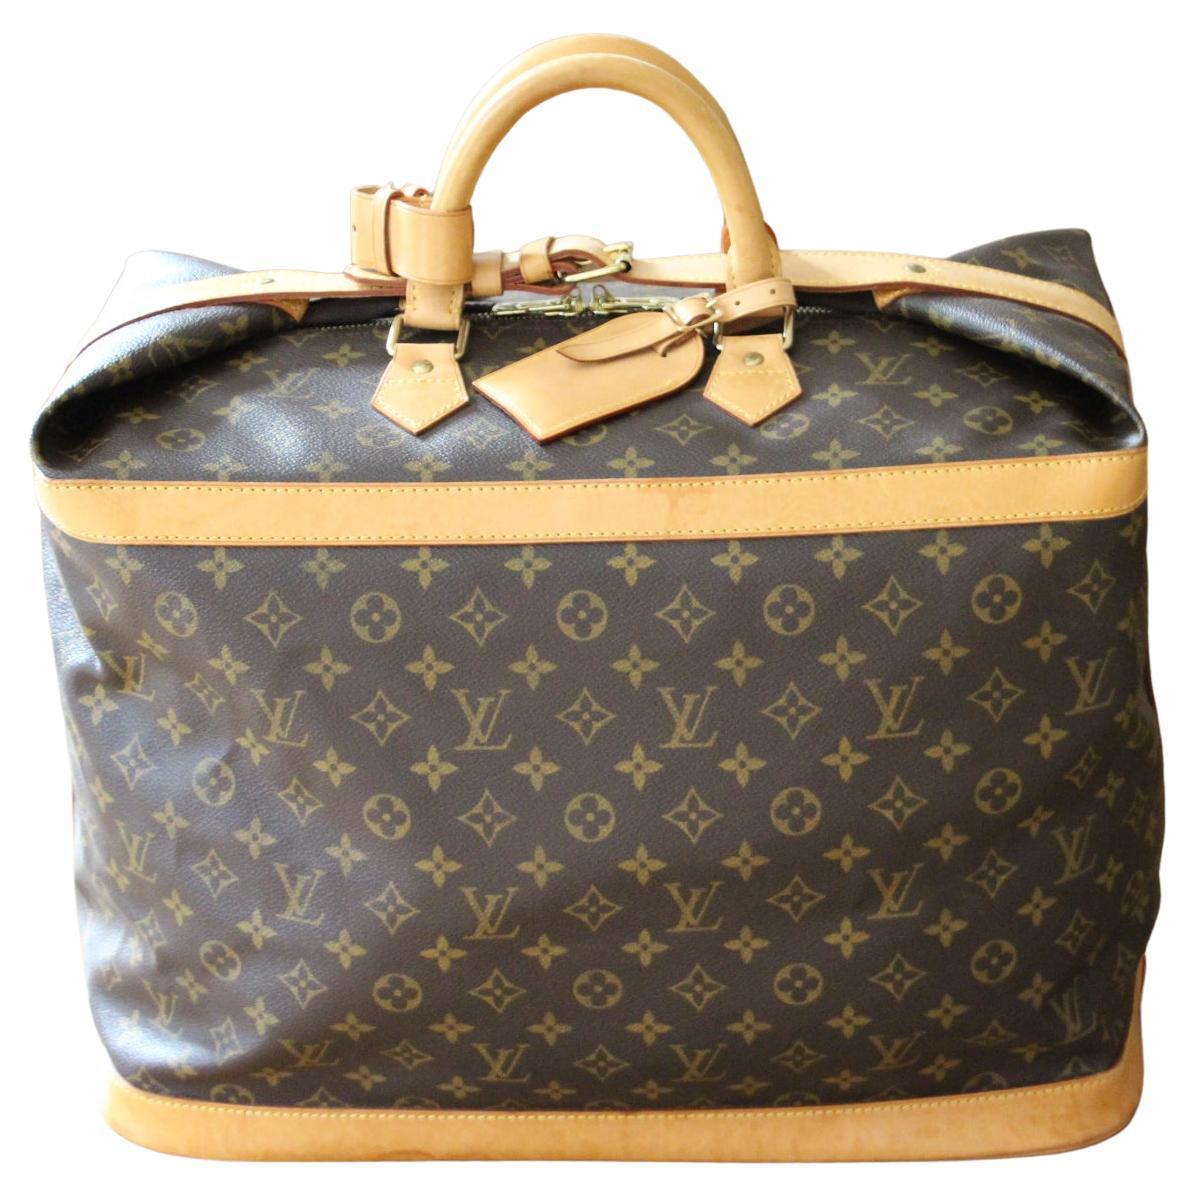 Large Louis Vuitton Bag 45, Large Louis Vuitton Duffle Bag, Louis Vuitton Bag For Sale